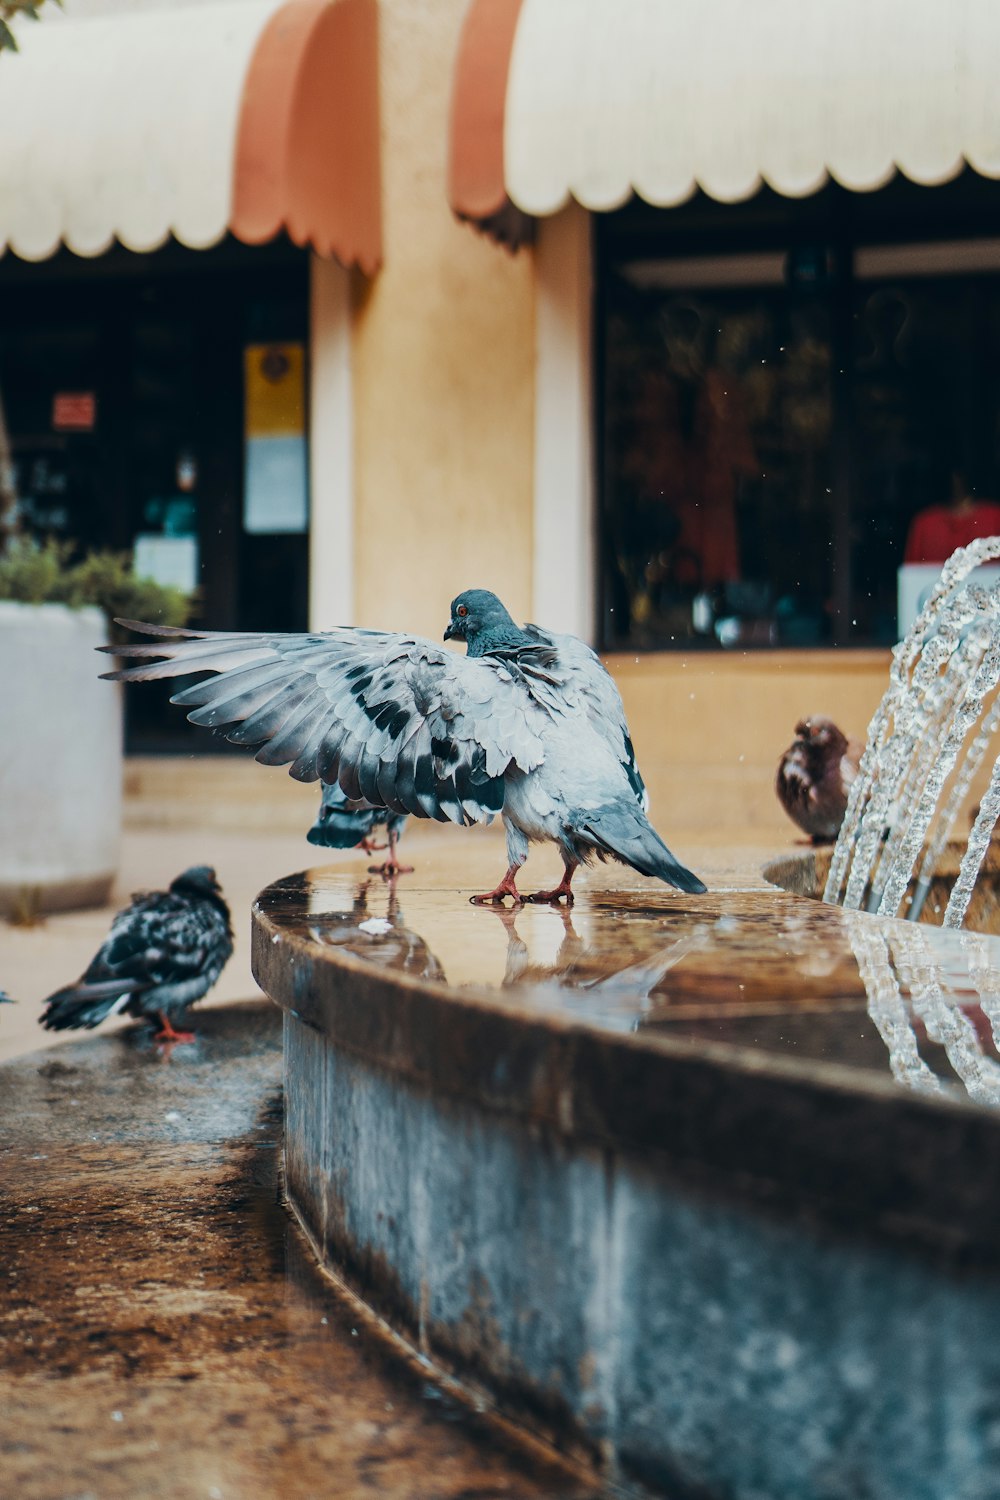 Diversi piccioni accanto alla fontana d'acqua all'aperto